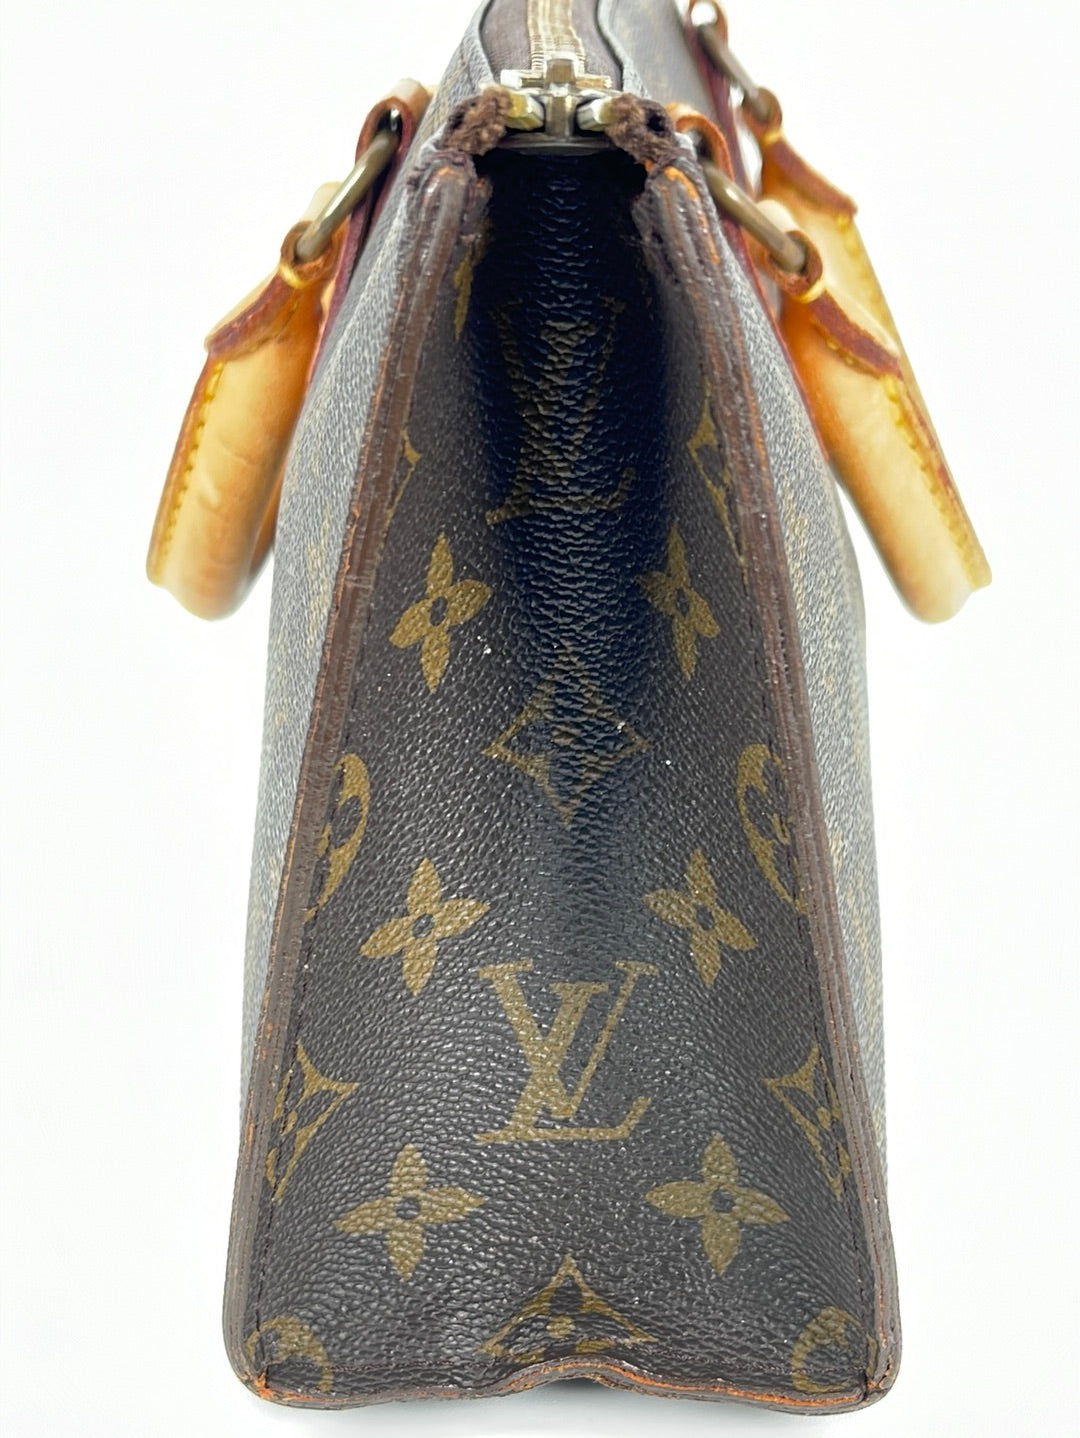 Louis Vuitton Rare Monogram Sac 3 Poches Suitcase Luggage 916lv2W